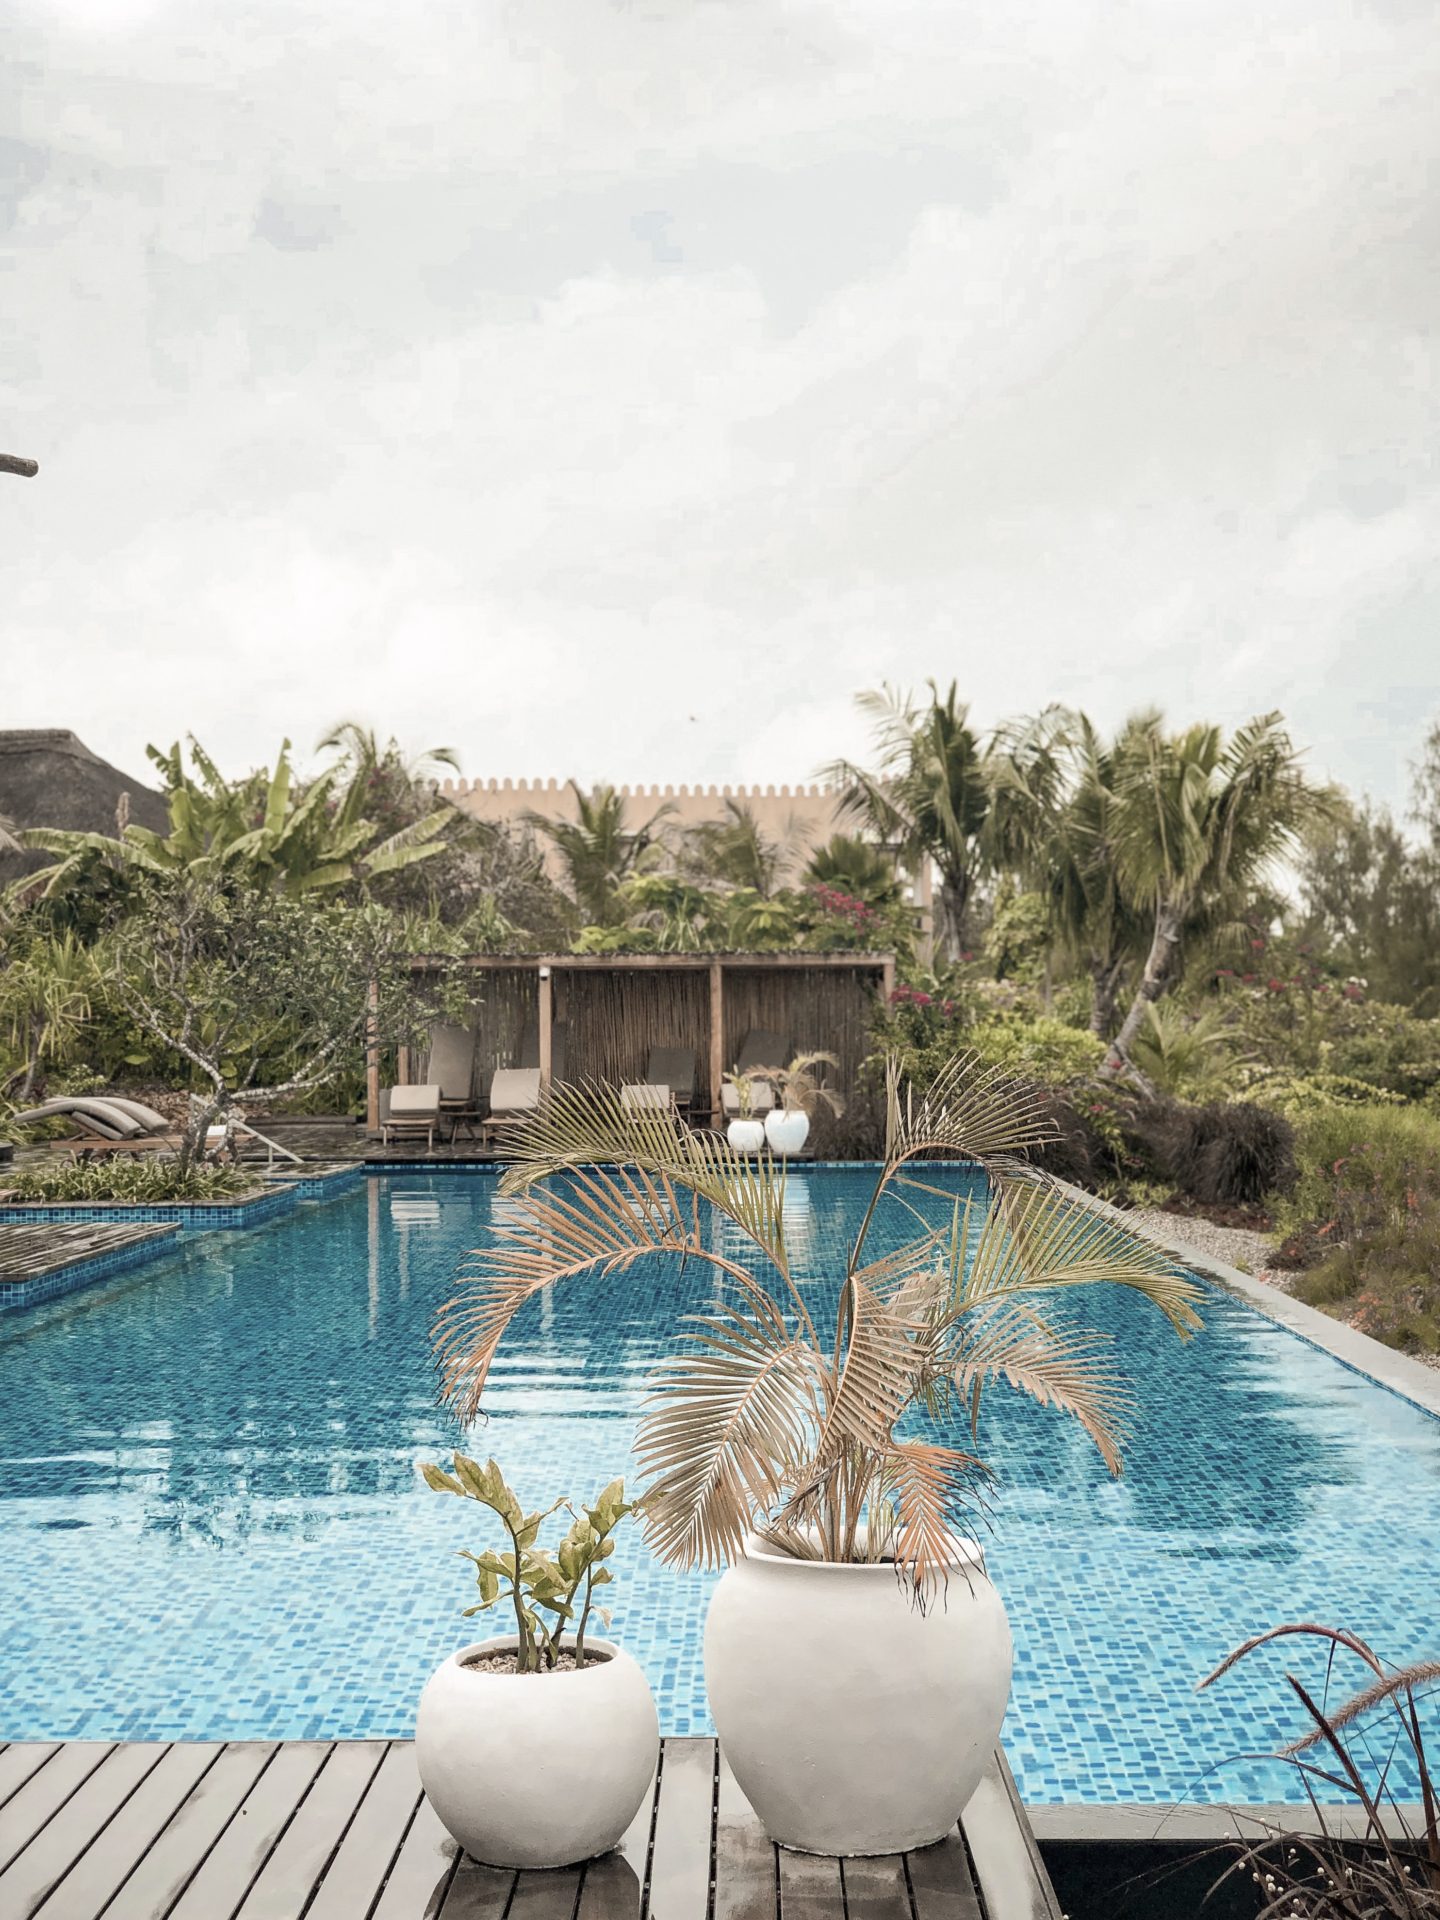 Zuri Zanzibar resort - infinity pool